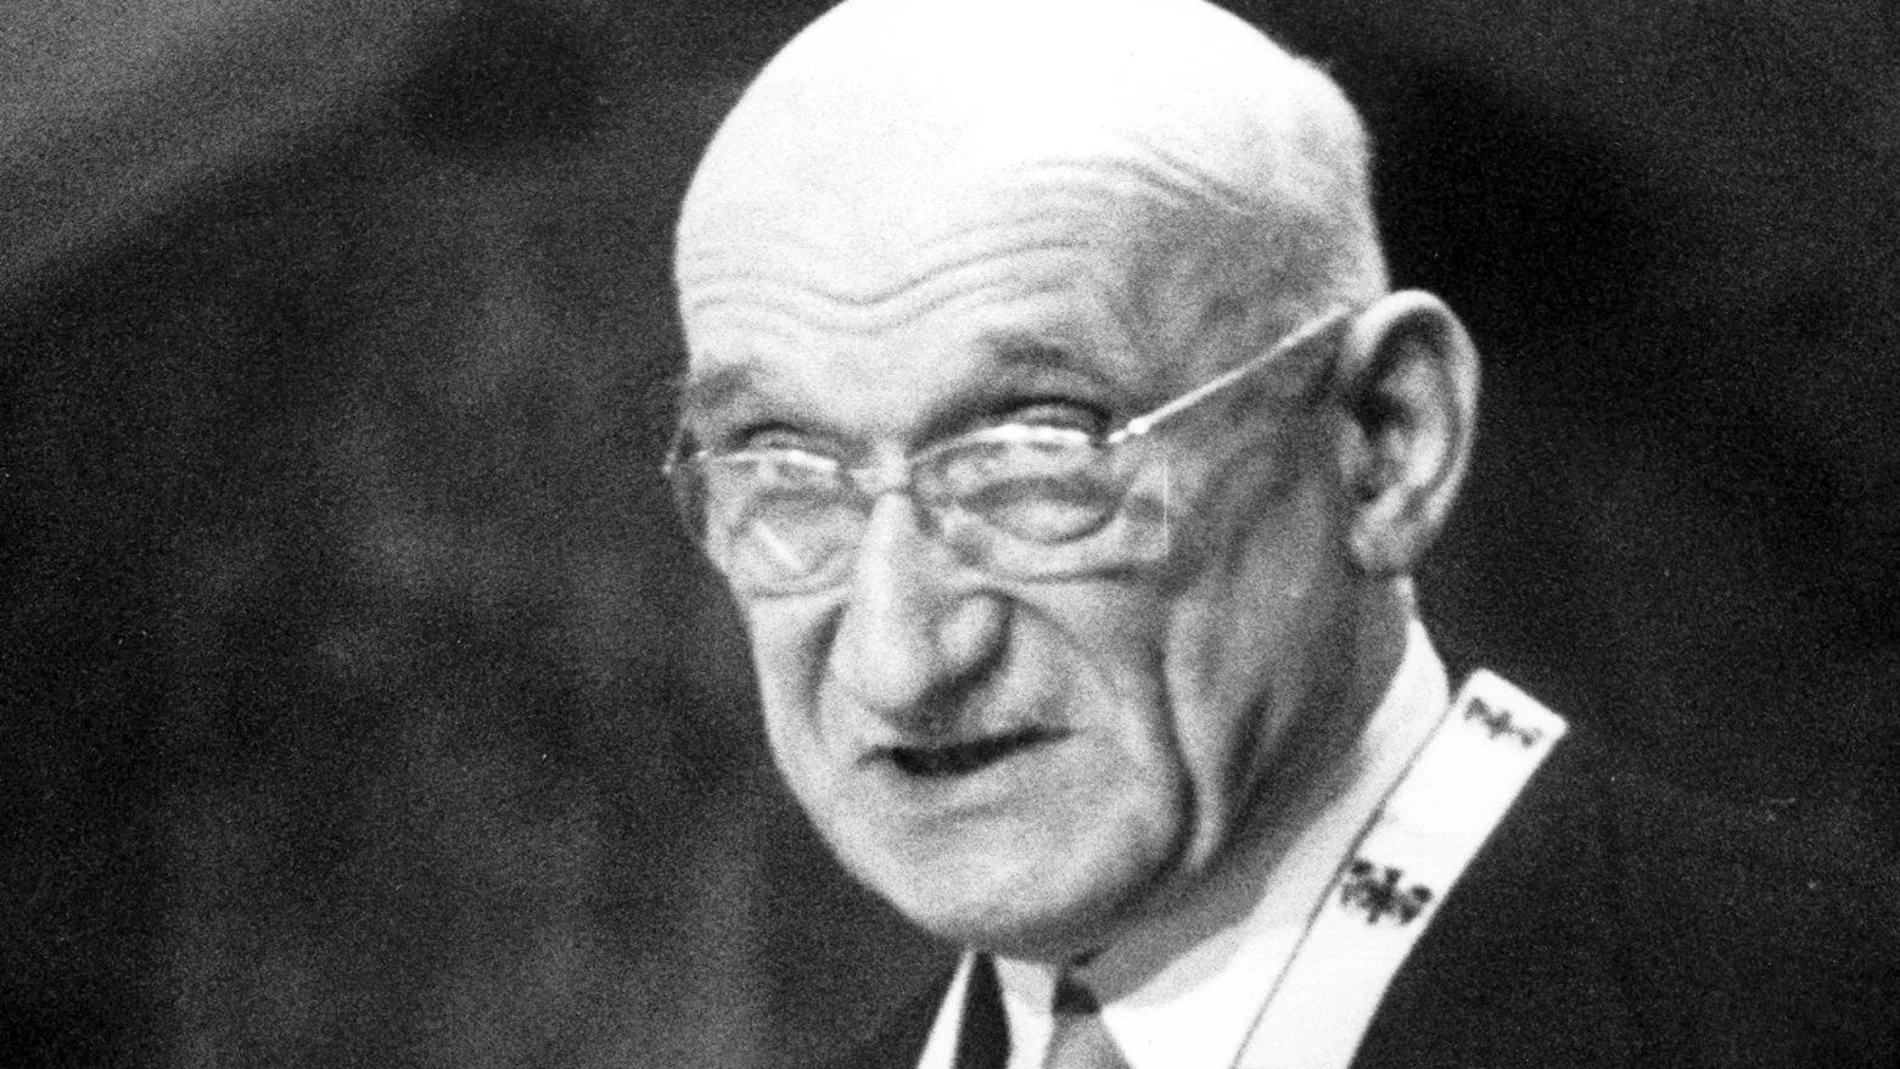 Para que Schuman pueda convertirse en santo necesitarán probarse dos milagros